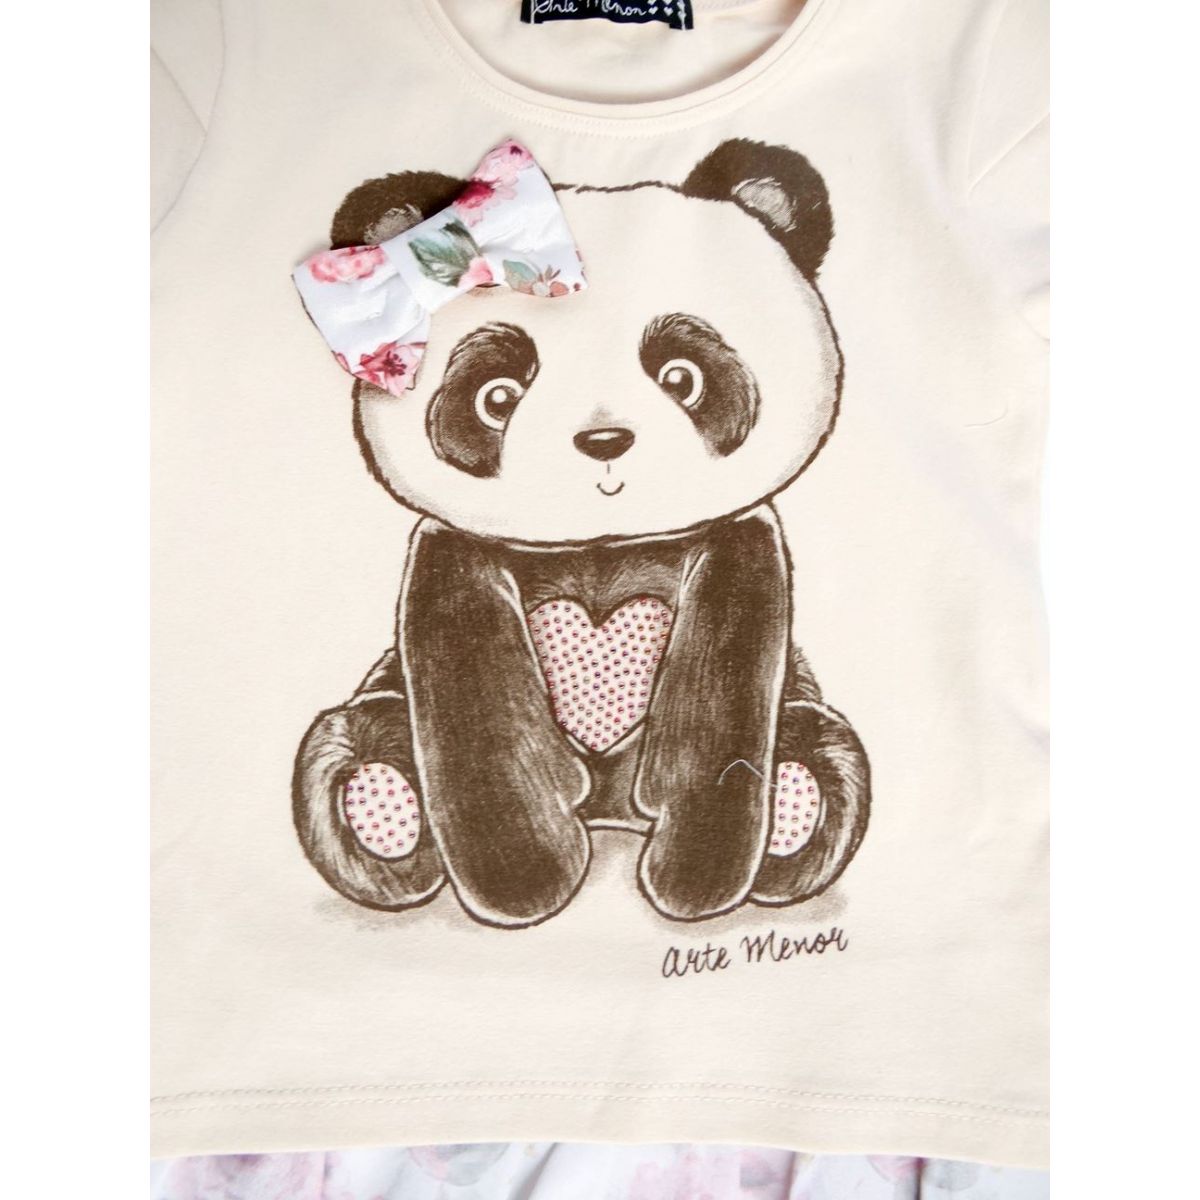 Blusa Feminina Panda - Ref. 30781